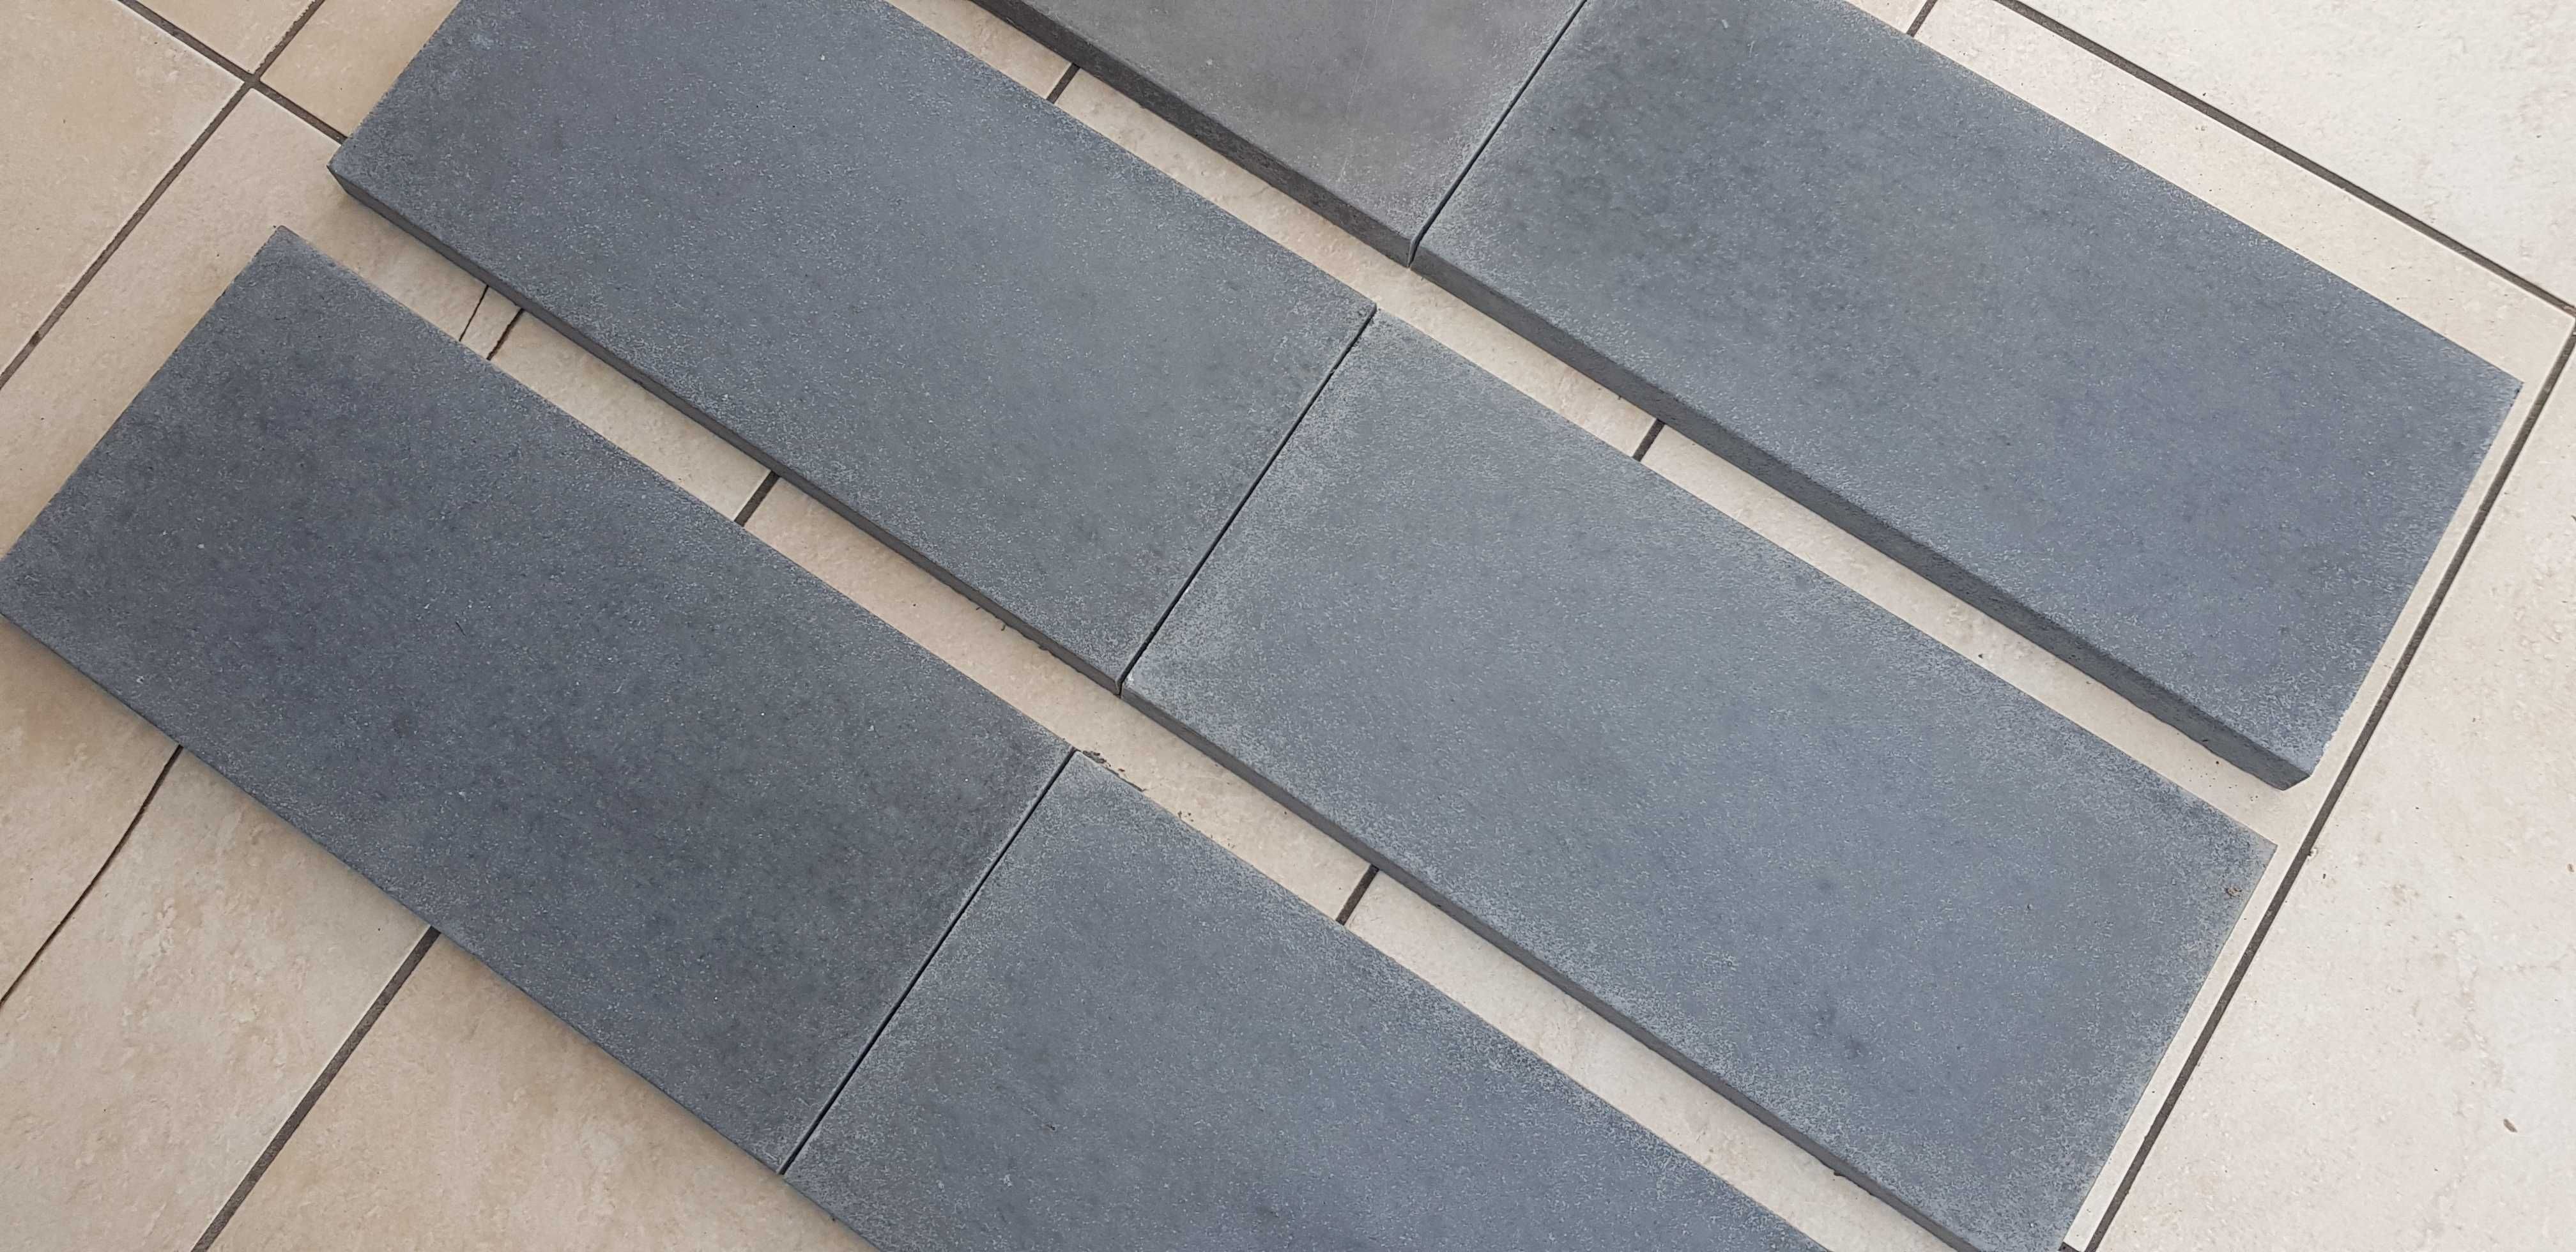 Daszki betonowe dwuspadowe 32x50 na murki słupki ogrodzeniowe